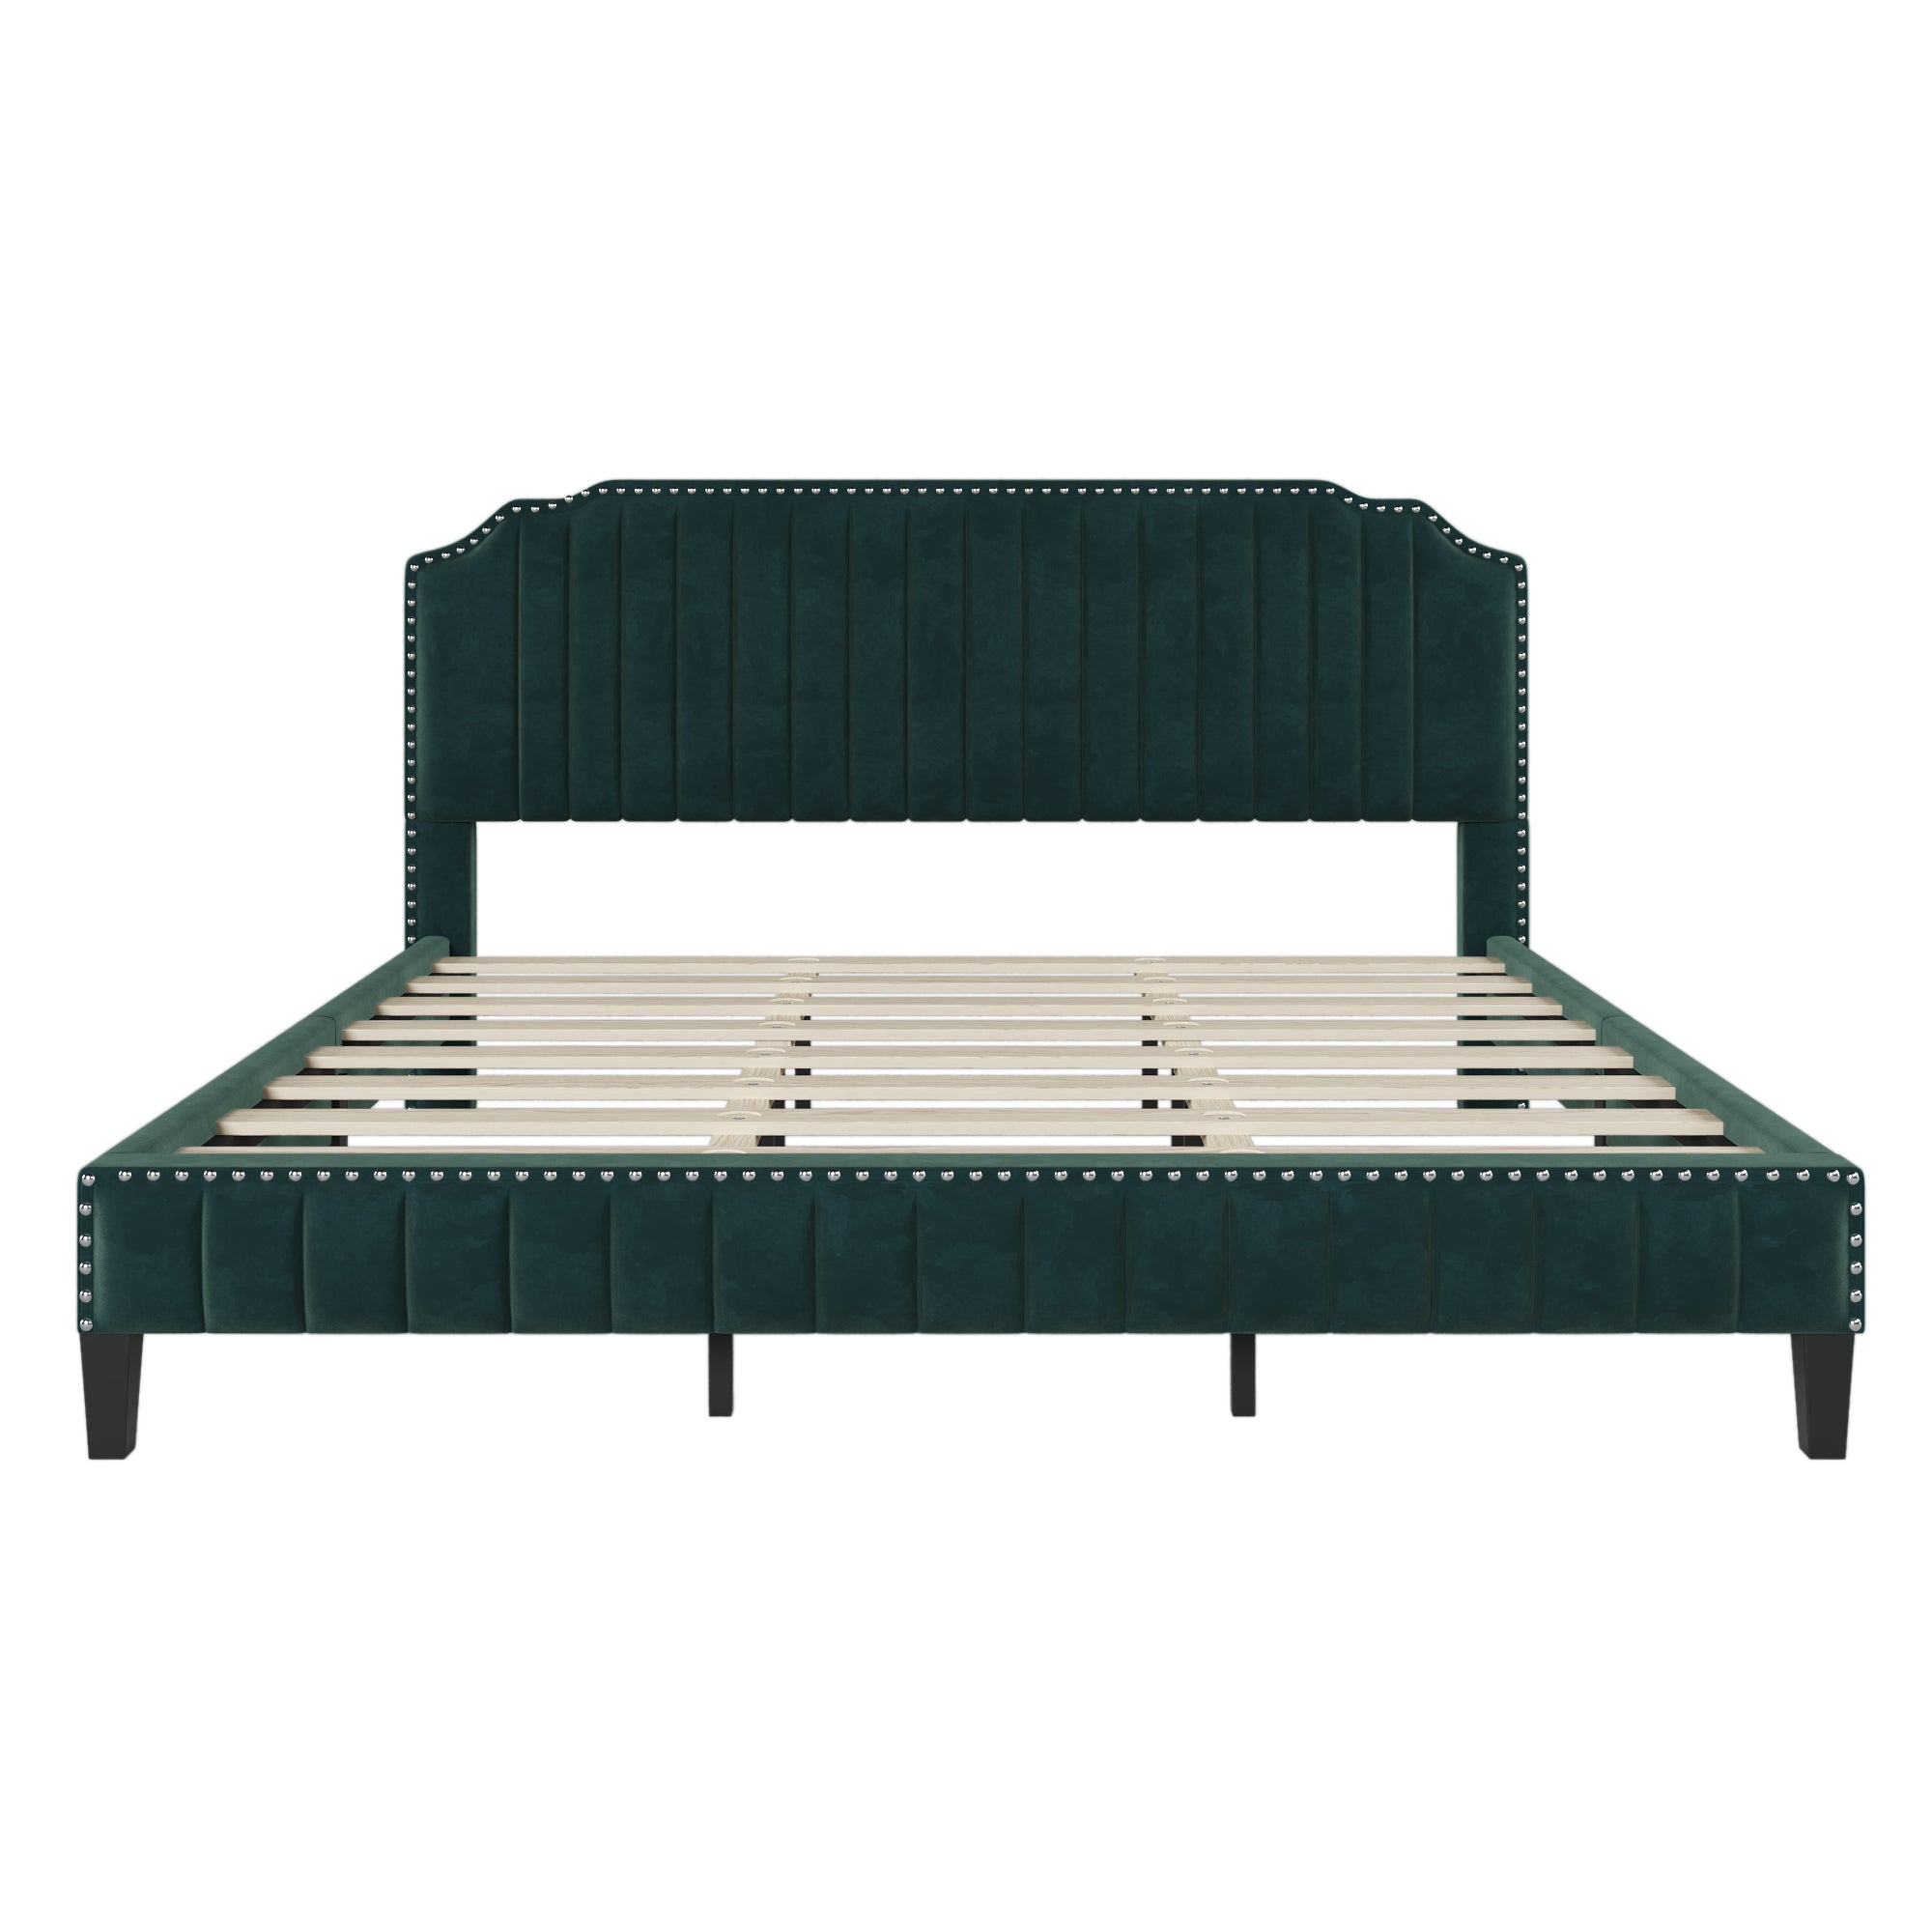 King Size Modern Green Velvet Upholstered Platform Bed Frame By: Alabama Beds